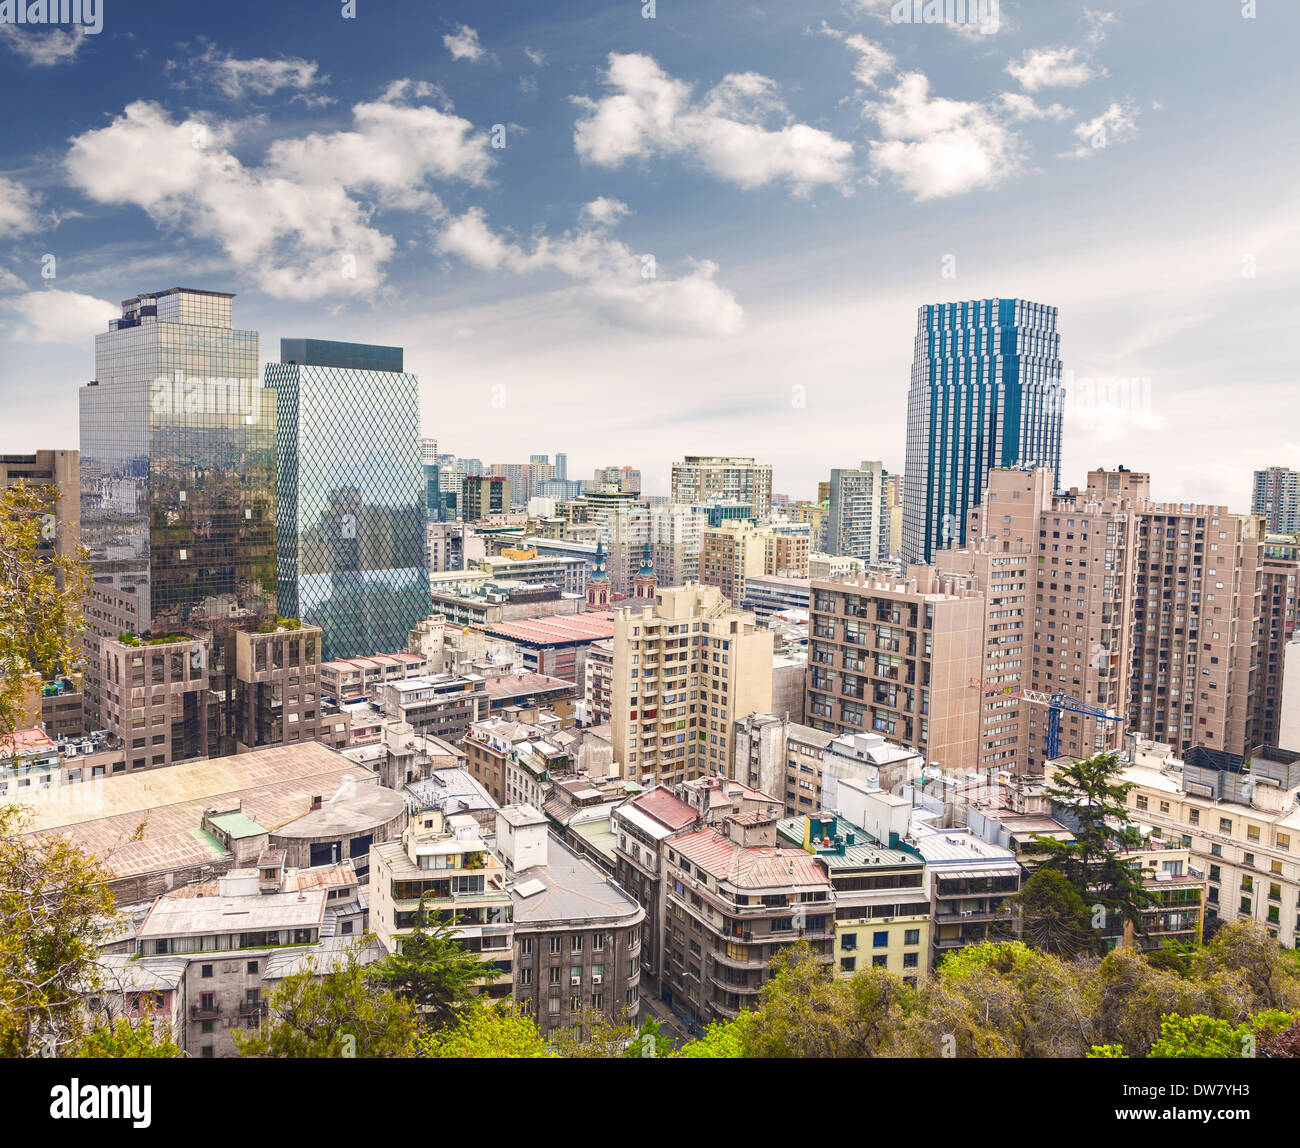 Le centre-ville de Santiago du Chili, les gratte-ciel modernes mélangé avec des bâtiments historiques, le Chili. Banque D'Images